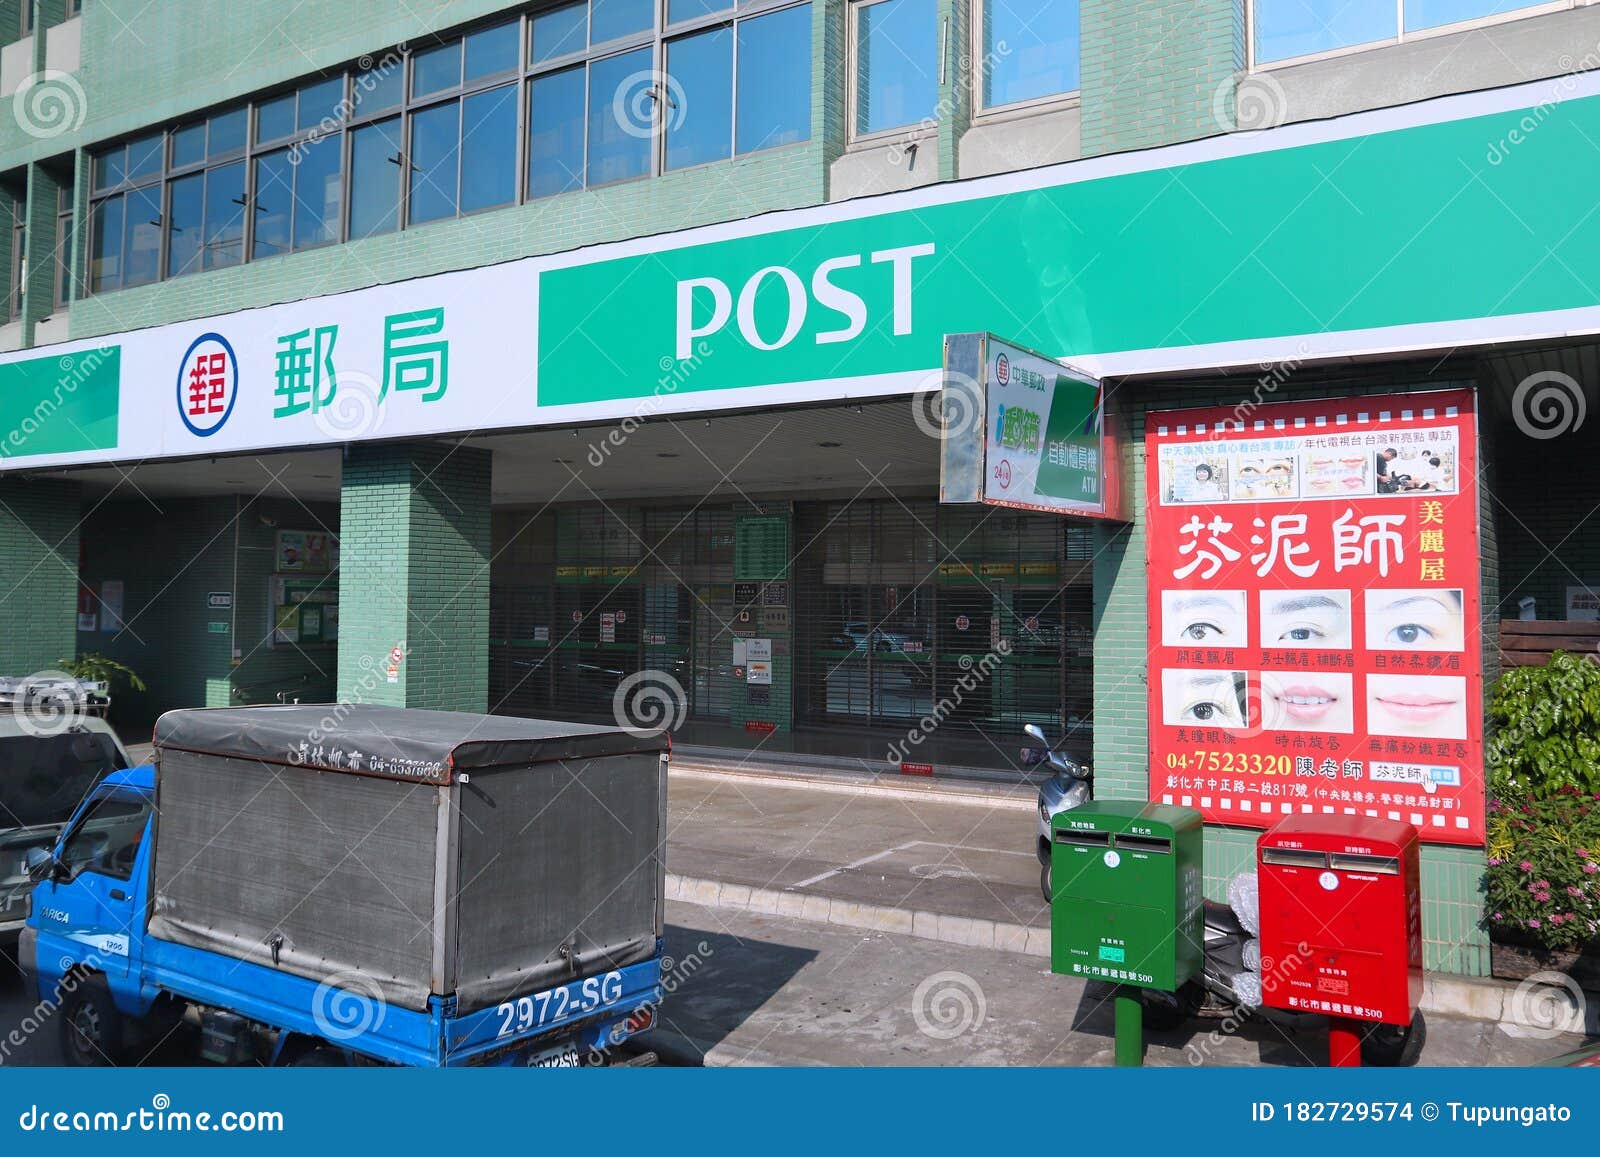 Descubrir 31+ imagen taiwan post office